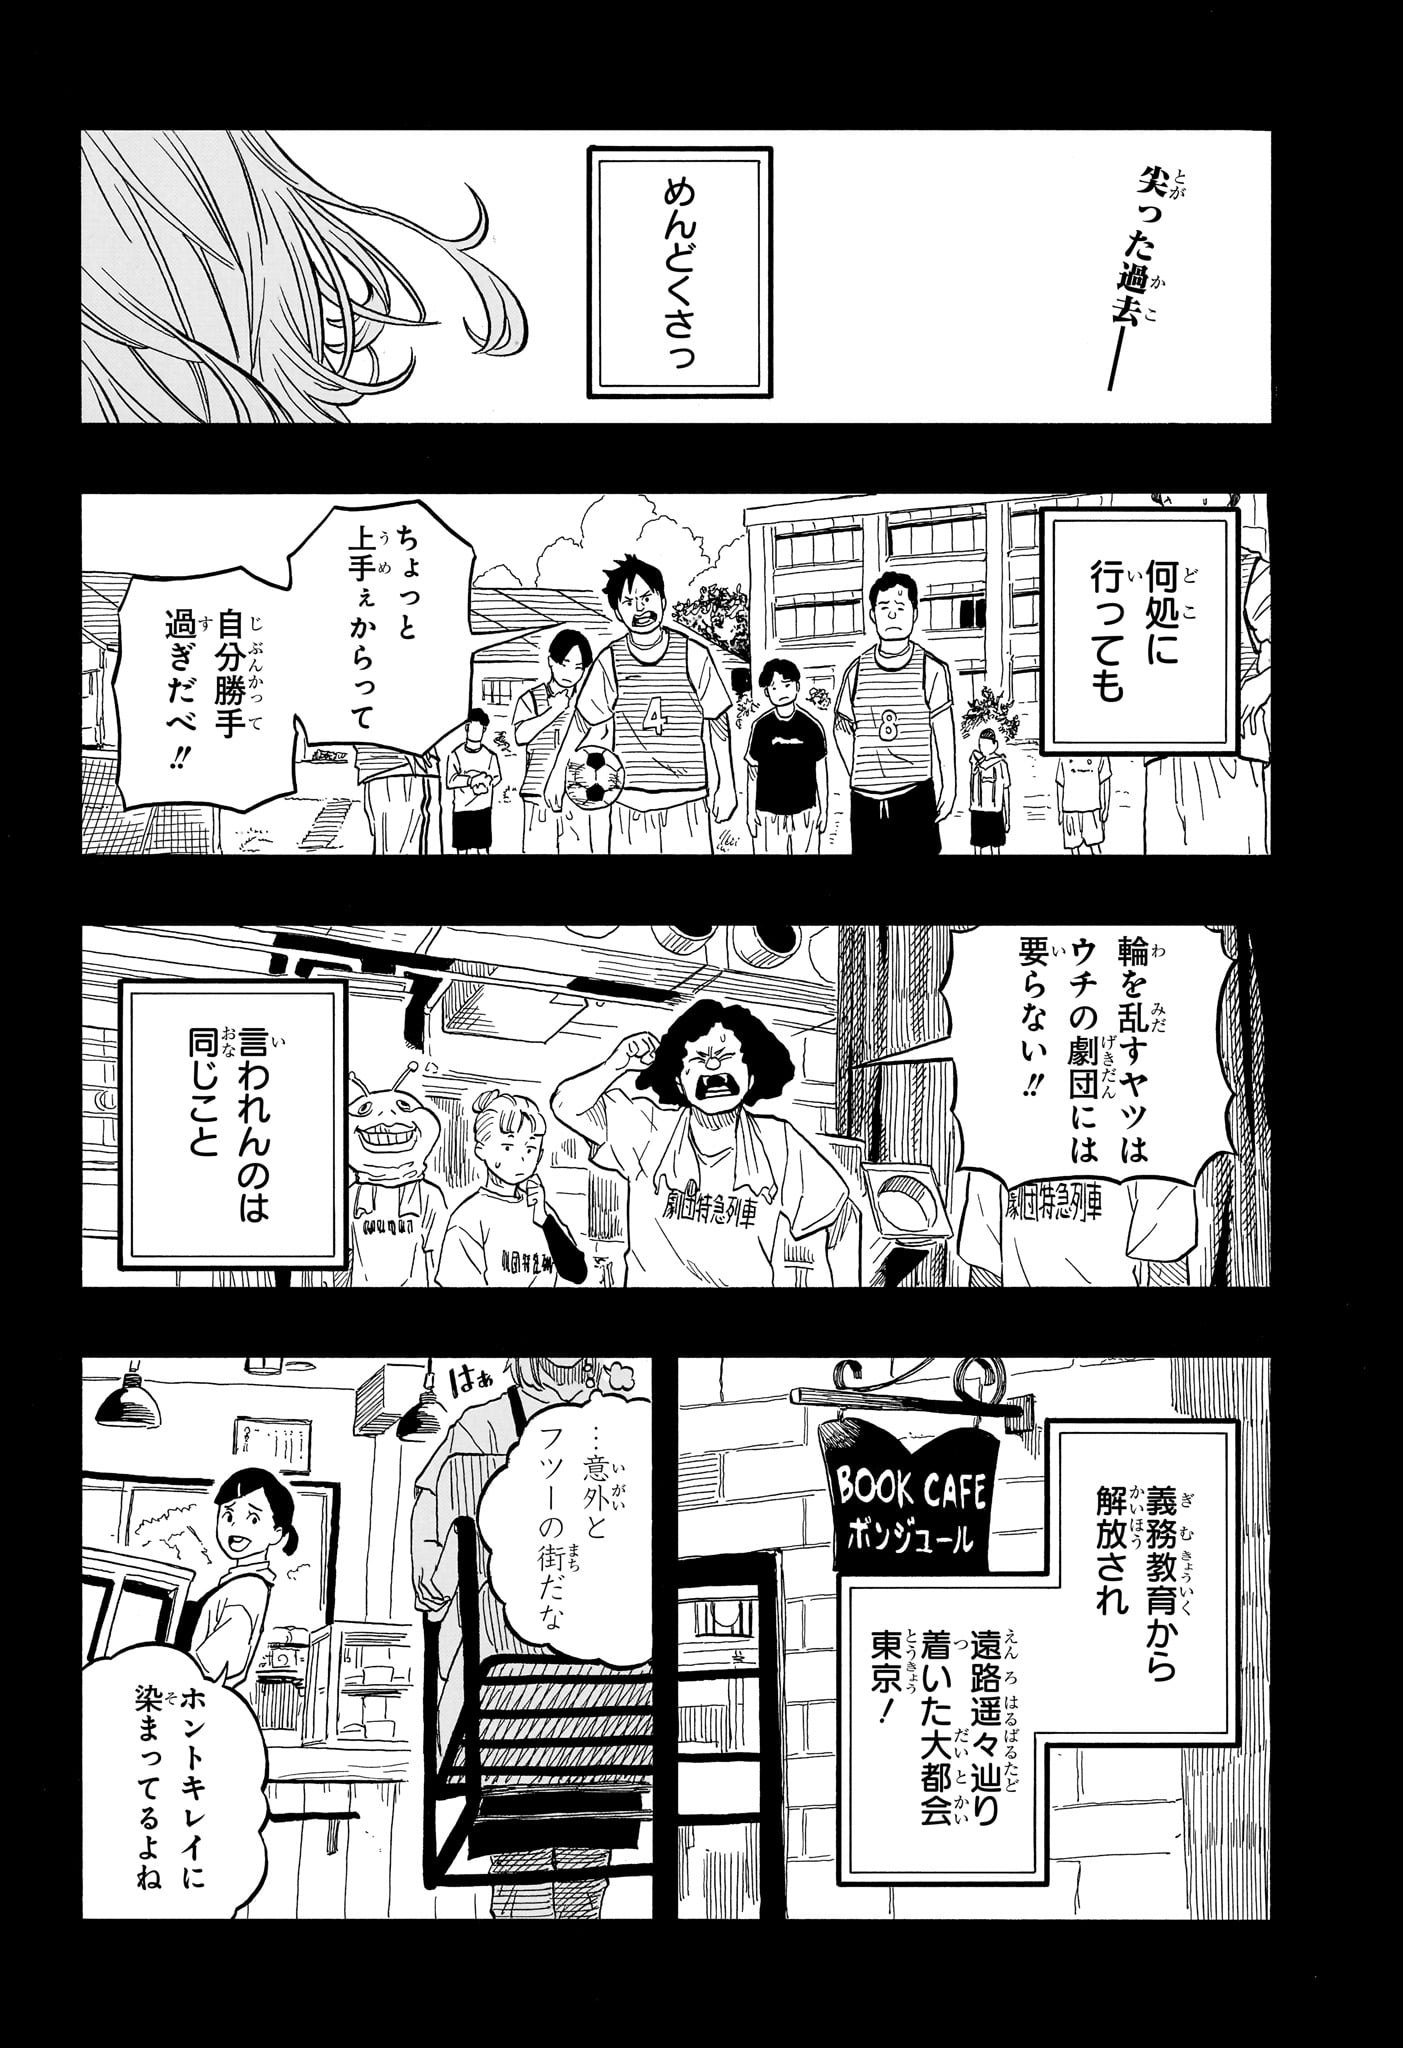 Akane-Banashi - Chapter 109 - Page 2